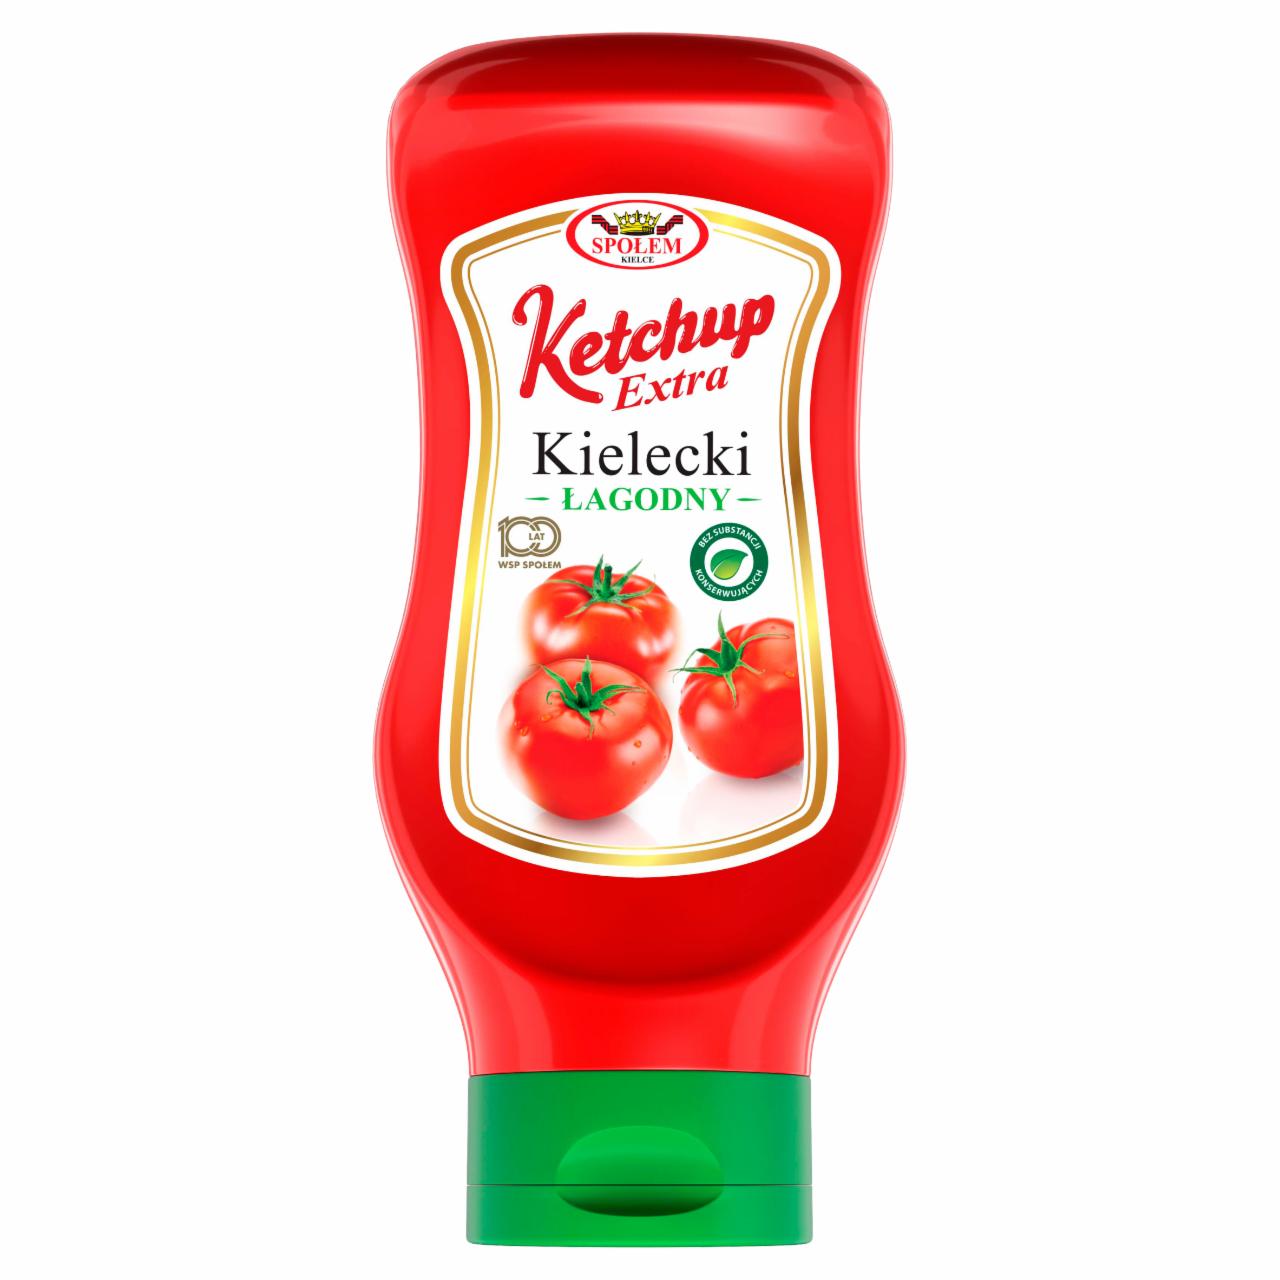 Zdjęcia - Ketchup Kielecki extra łagodny 500 g